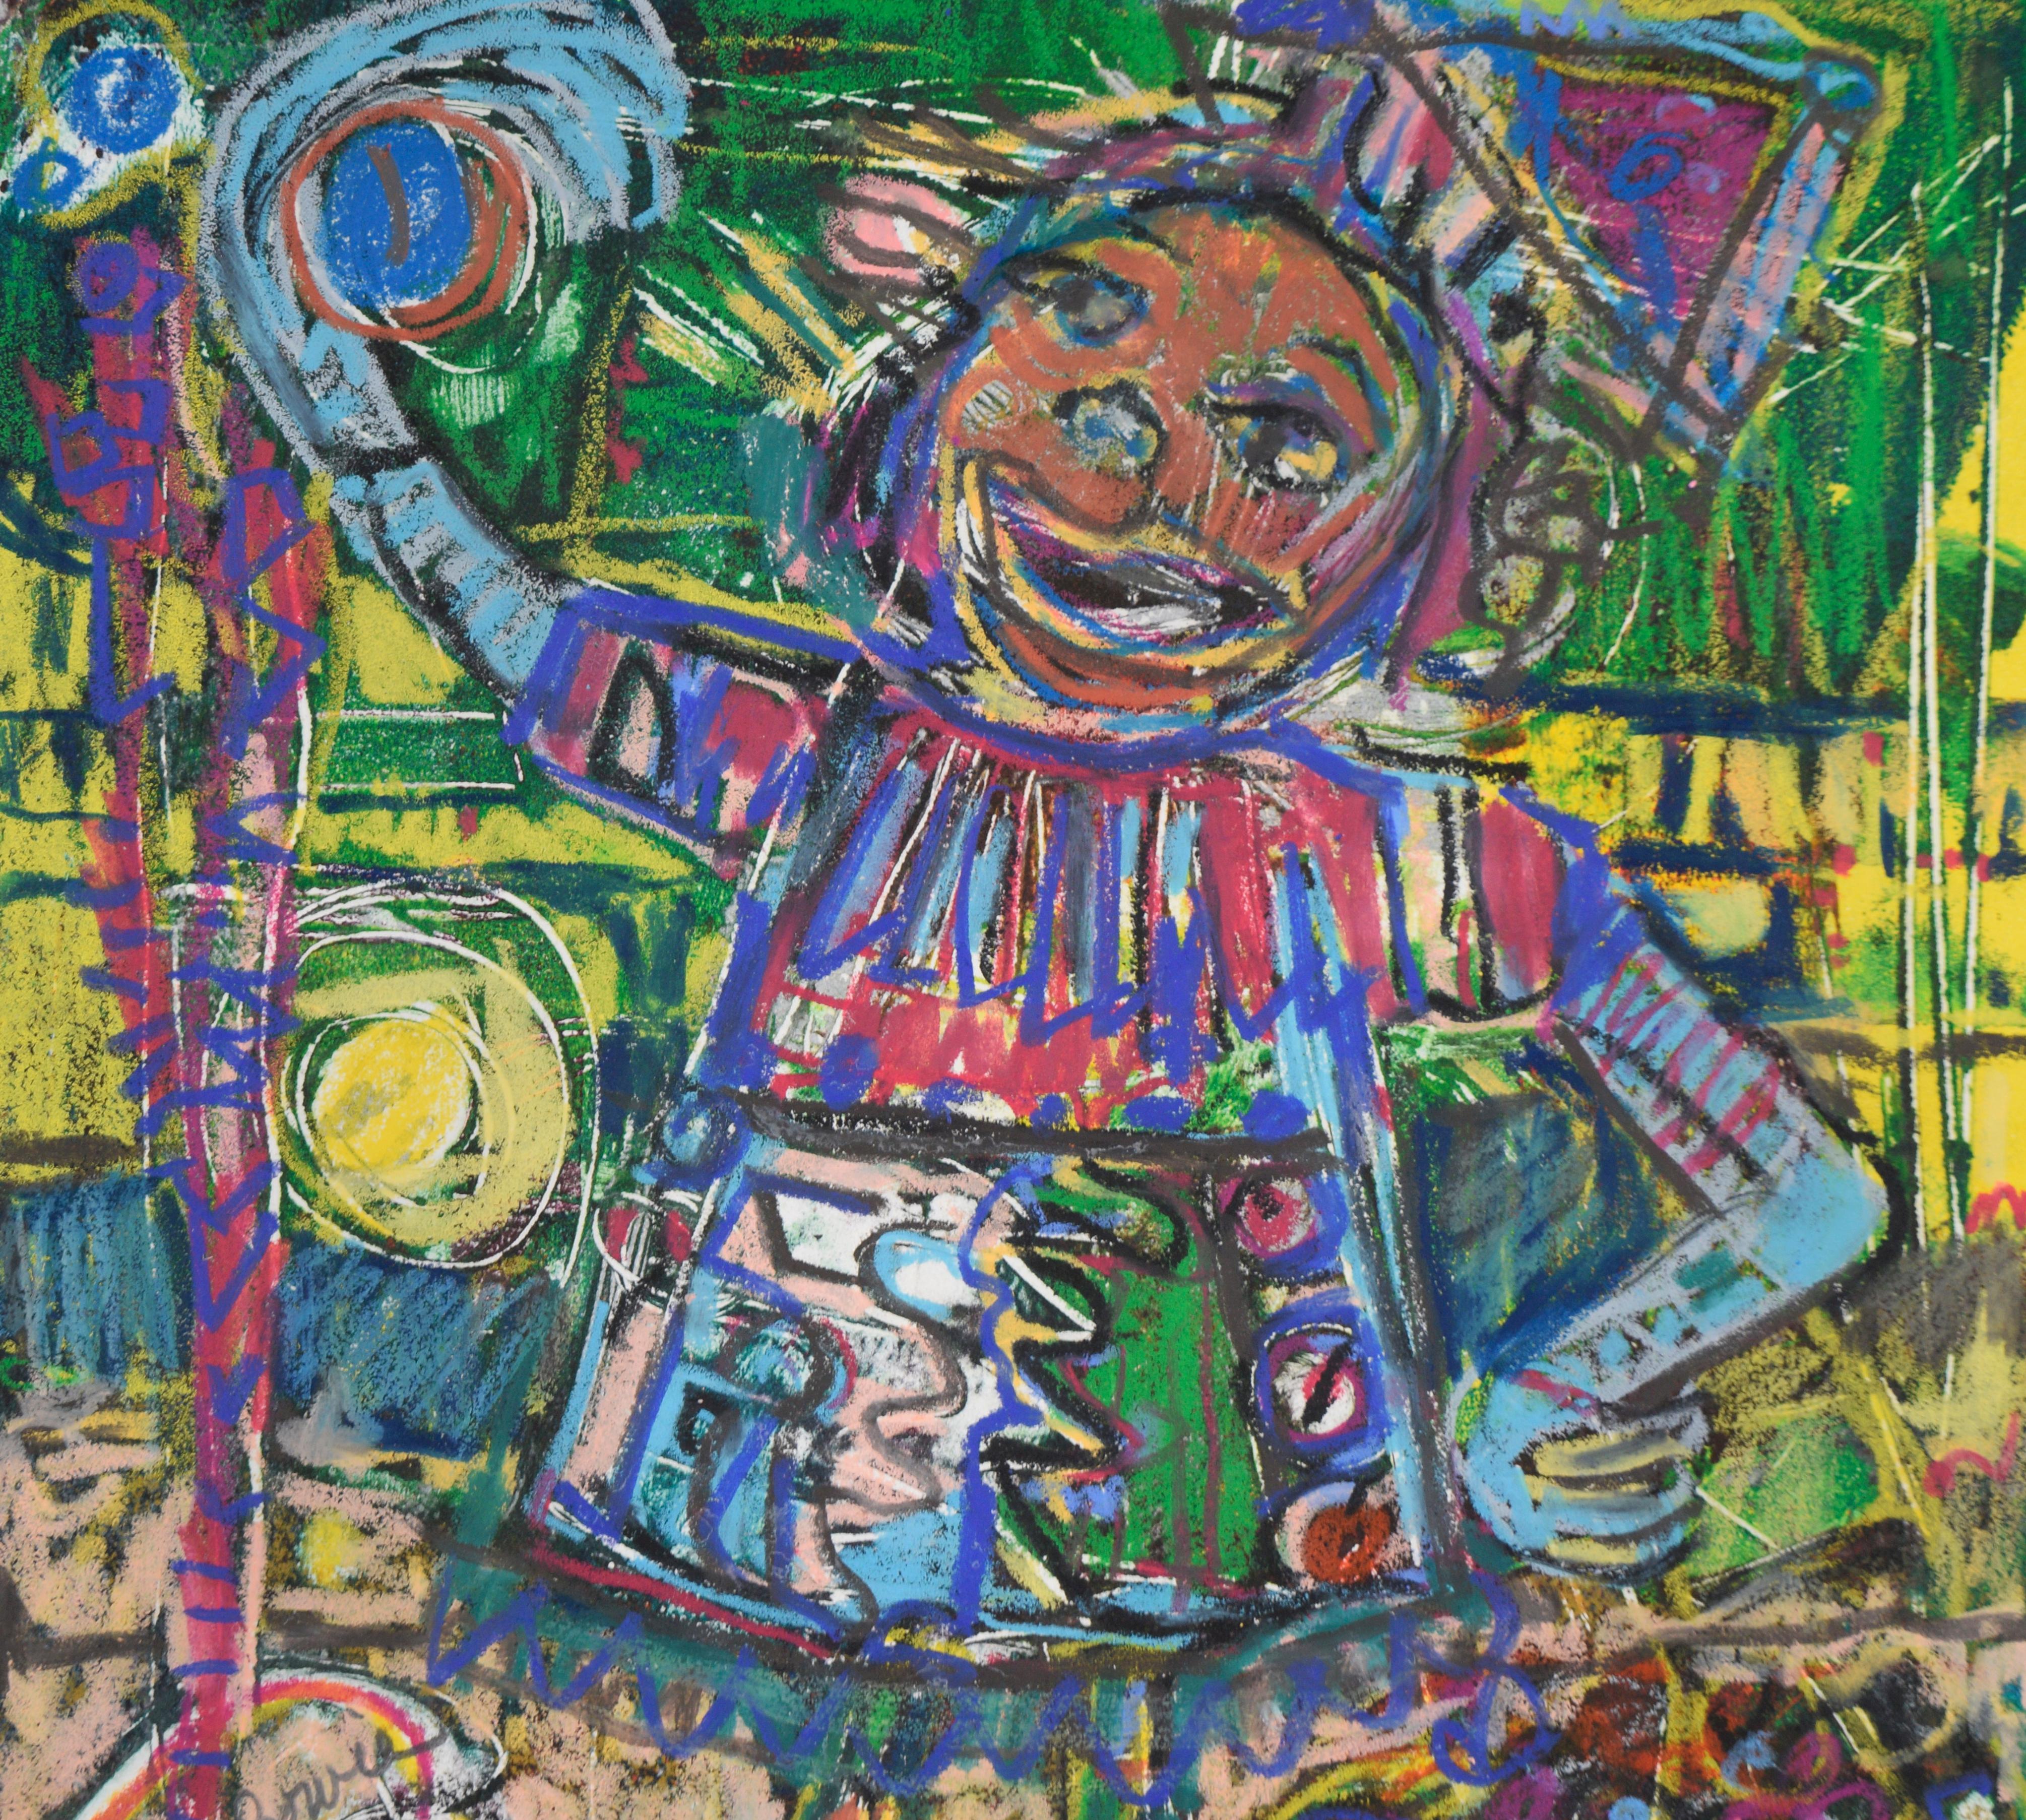  Abstraktes expressionistisches Gemälde, das ein figuratives Mädchen in voller Partylaune darstellt, von der figurativen Künstlerin Carol Bowie (Amerikanerin, 20. Jh.) aus der Bay Area. Die Figur besteht aus mehrfarbigen abstrakten Elementen, deren